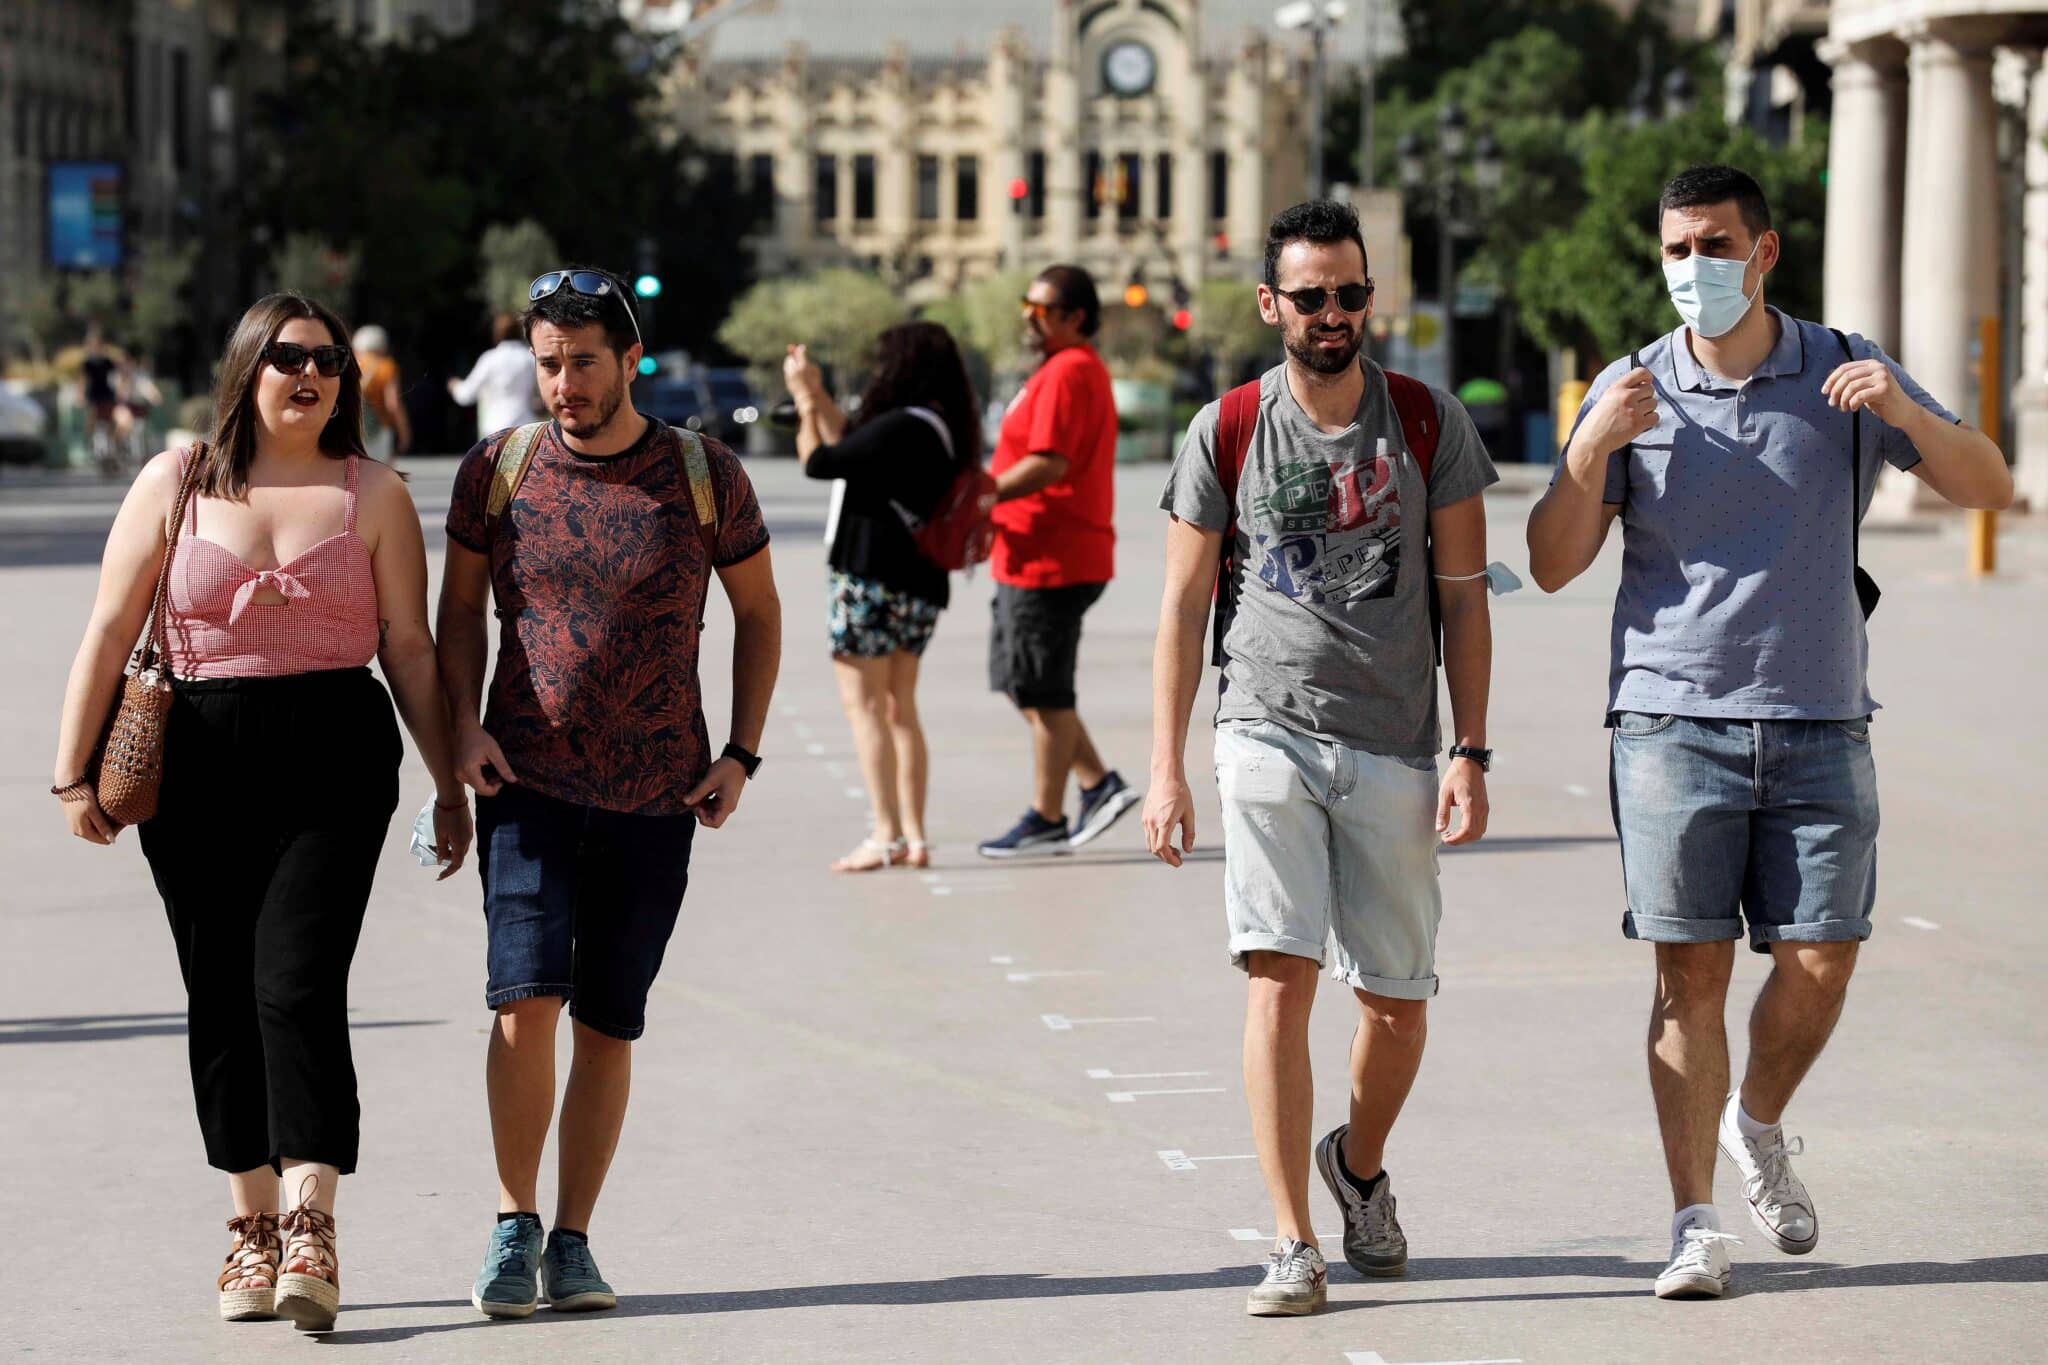 Varias personas caminan con y sin mascarillas por la calle en Valencia.